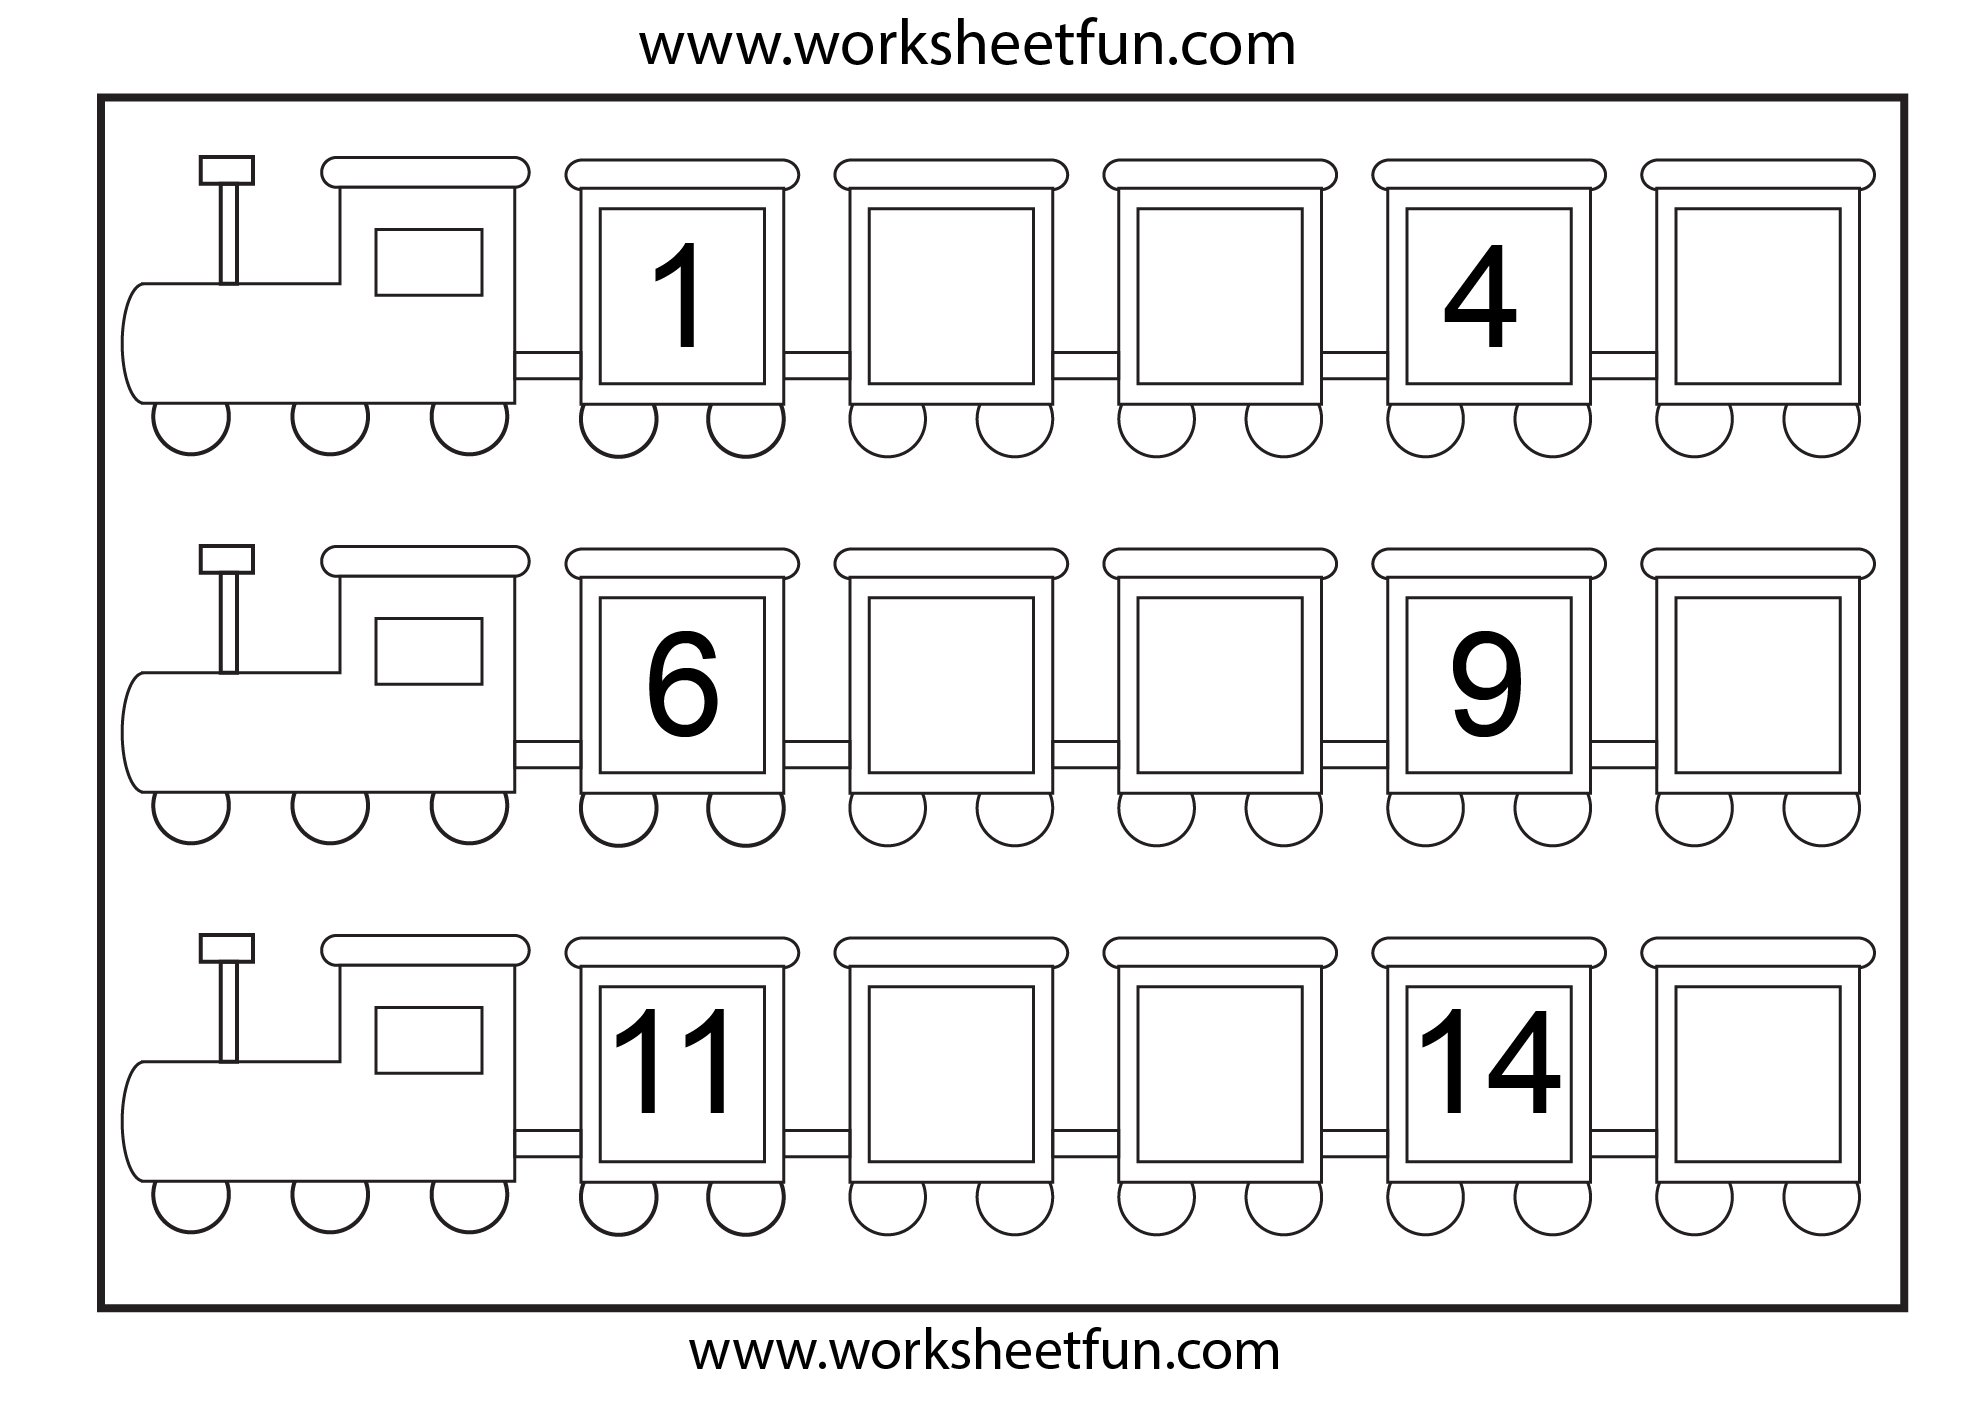 missing-numbers-1-15-3-worksheets-free-printable-worksheets-worksheetfun